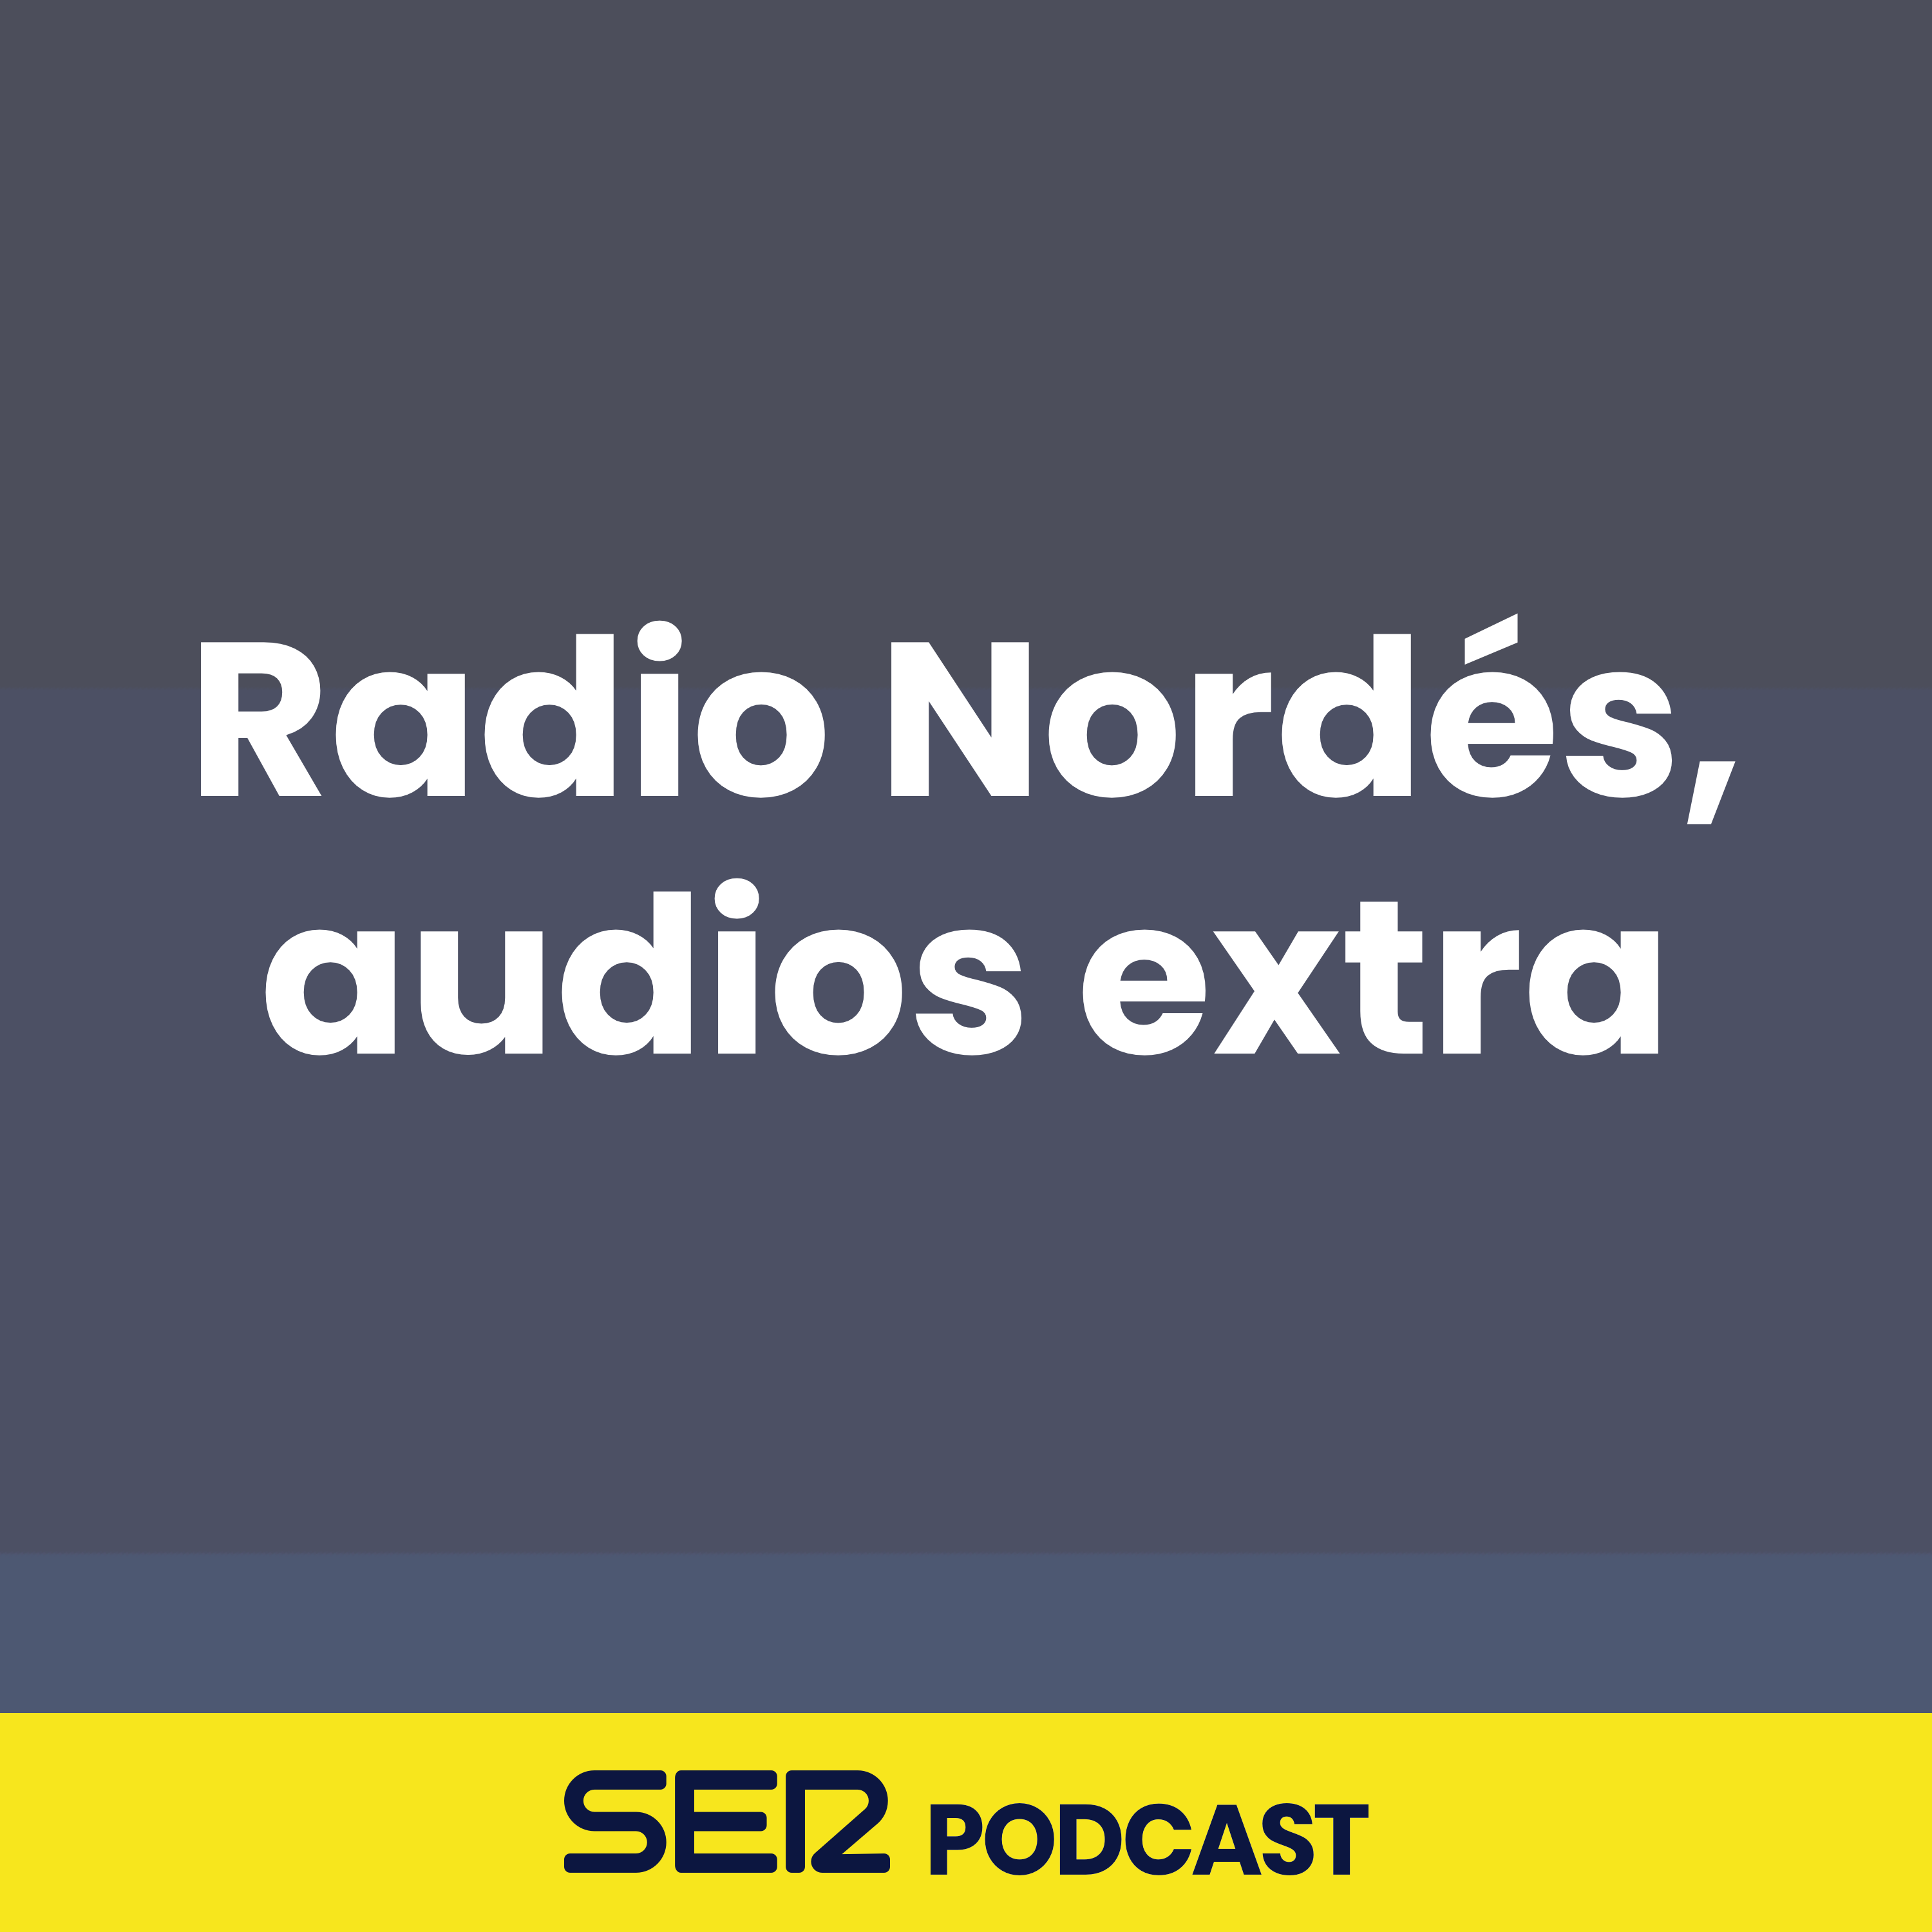 Radio Nordés, audios extra